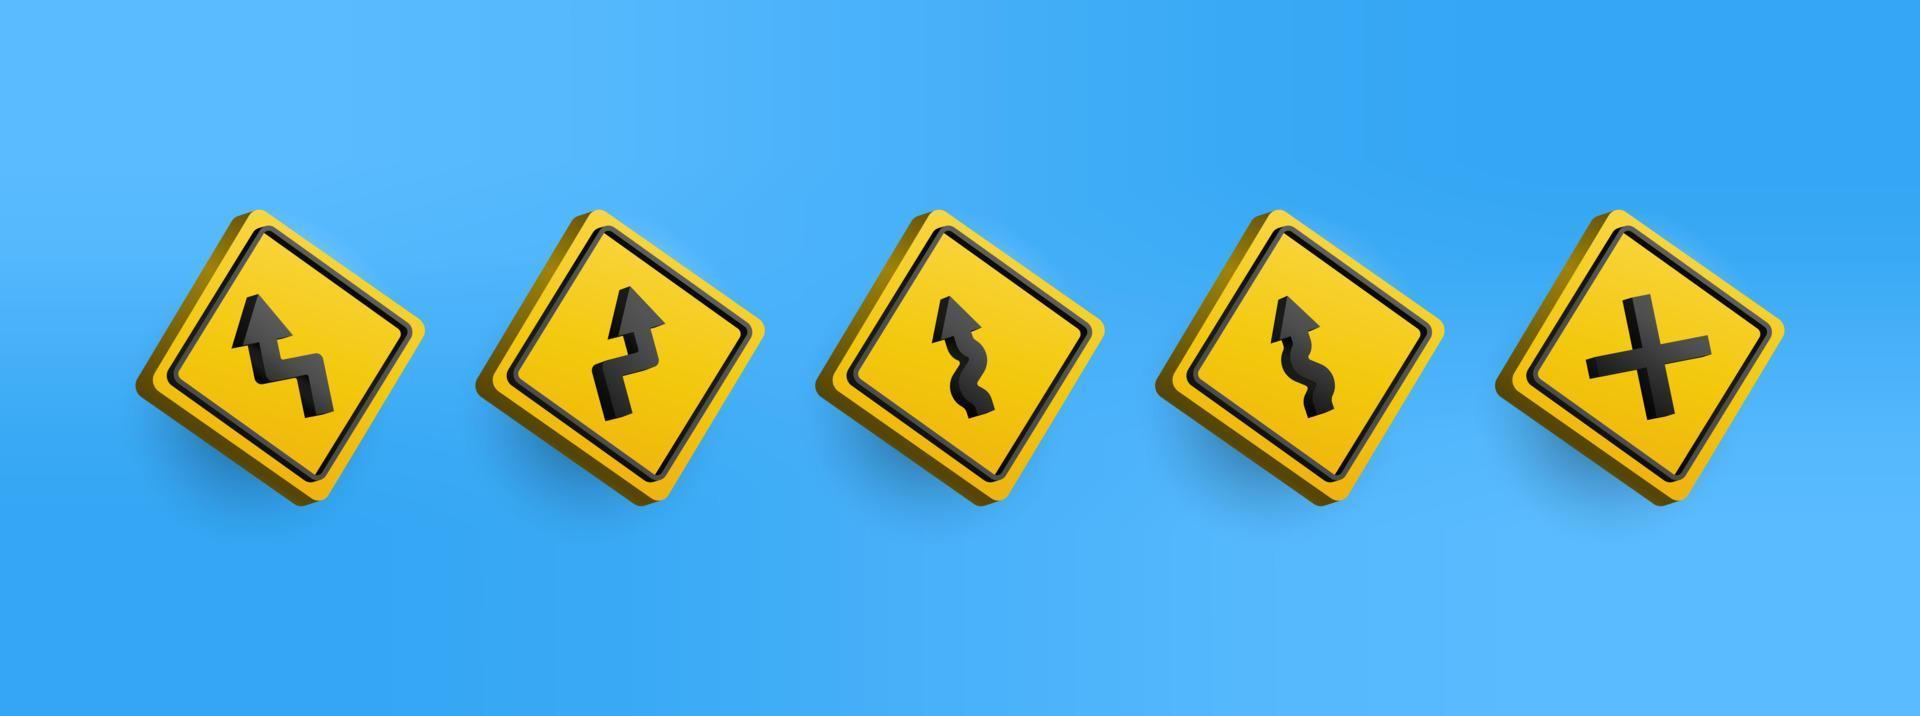 3D-Symbolsammlung für gelbe Warnzeichen für Verkehrszeichen. vektorillustration des verkehrszeichens einfach editierbar vektor